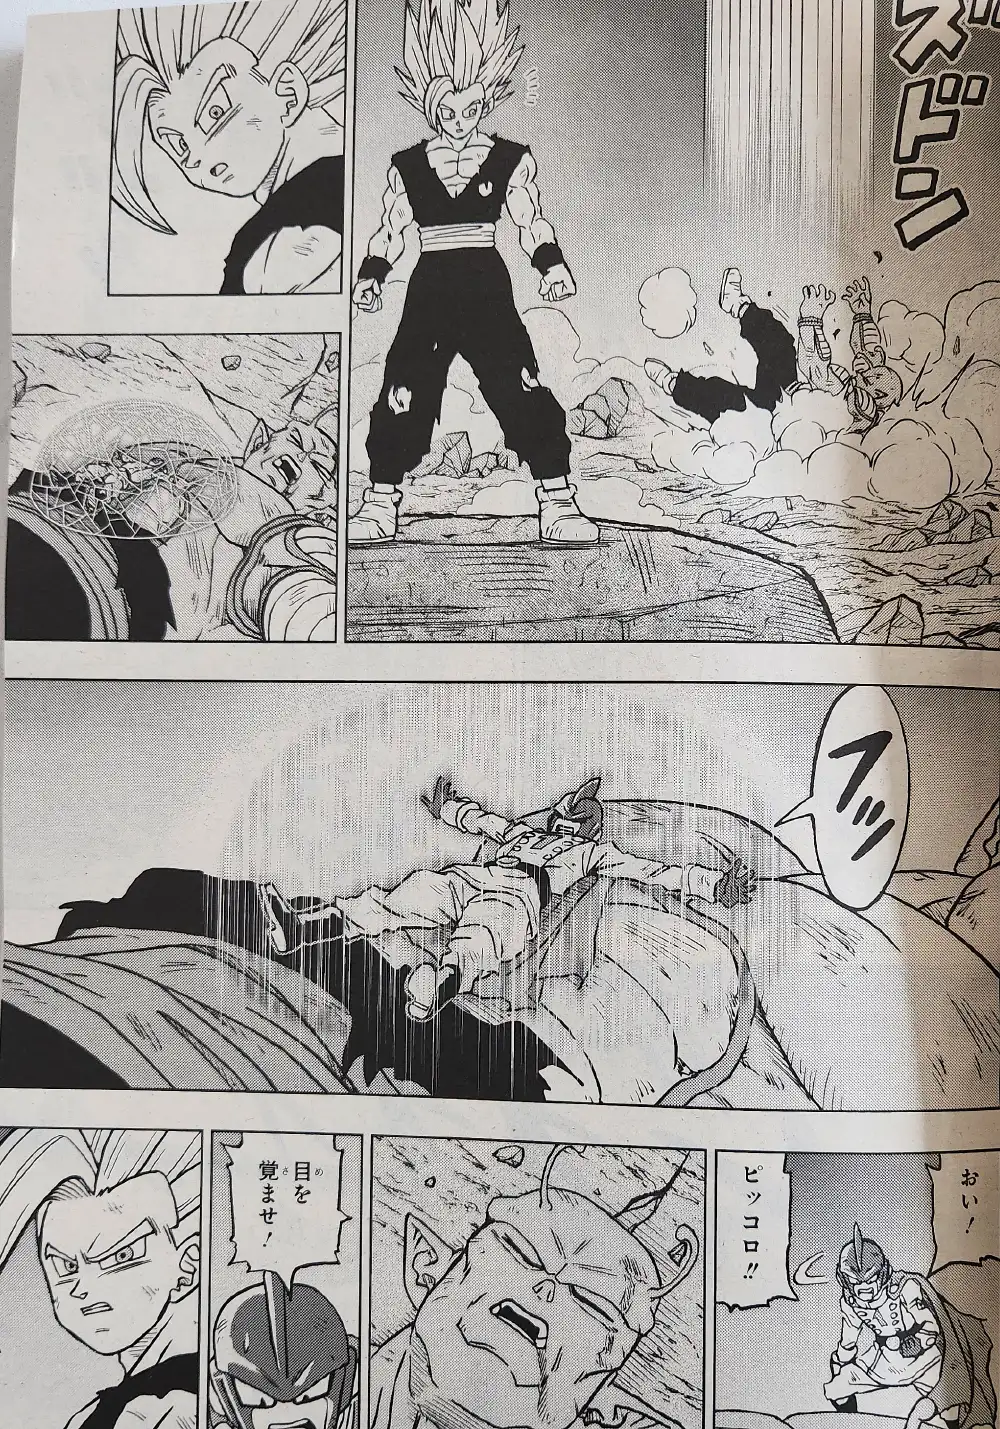 Gohan Beast dans le manga DBS chapitre 99 Image 00008